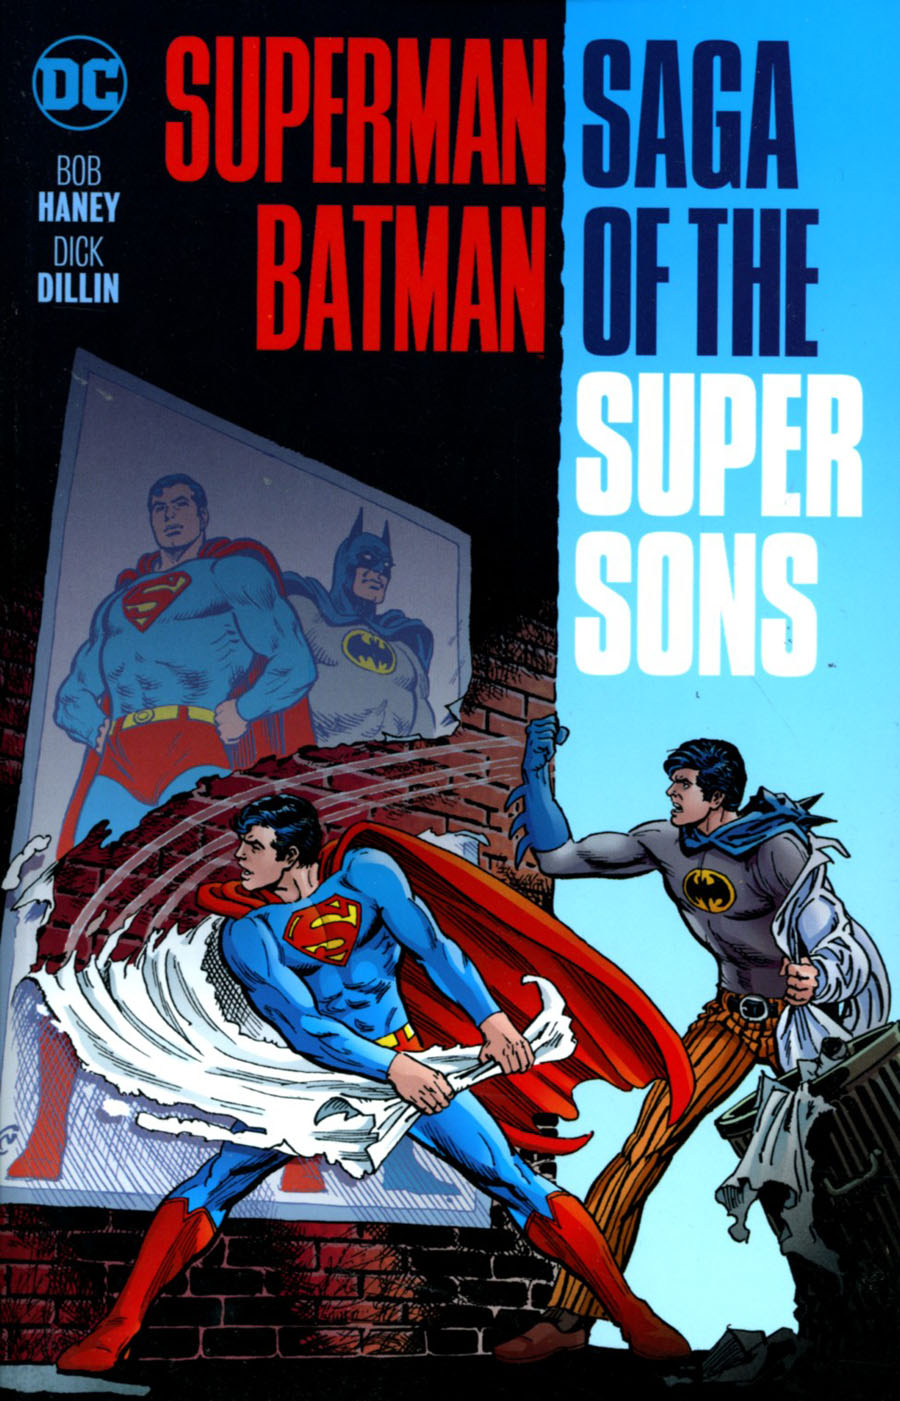 Superman Batman Saga Of The Super Sons TP New Edition